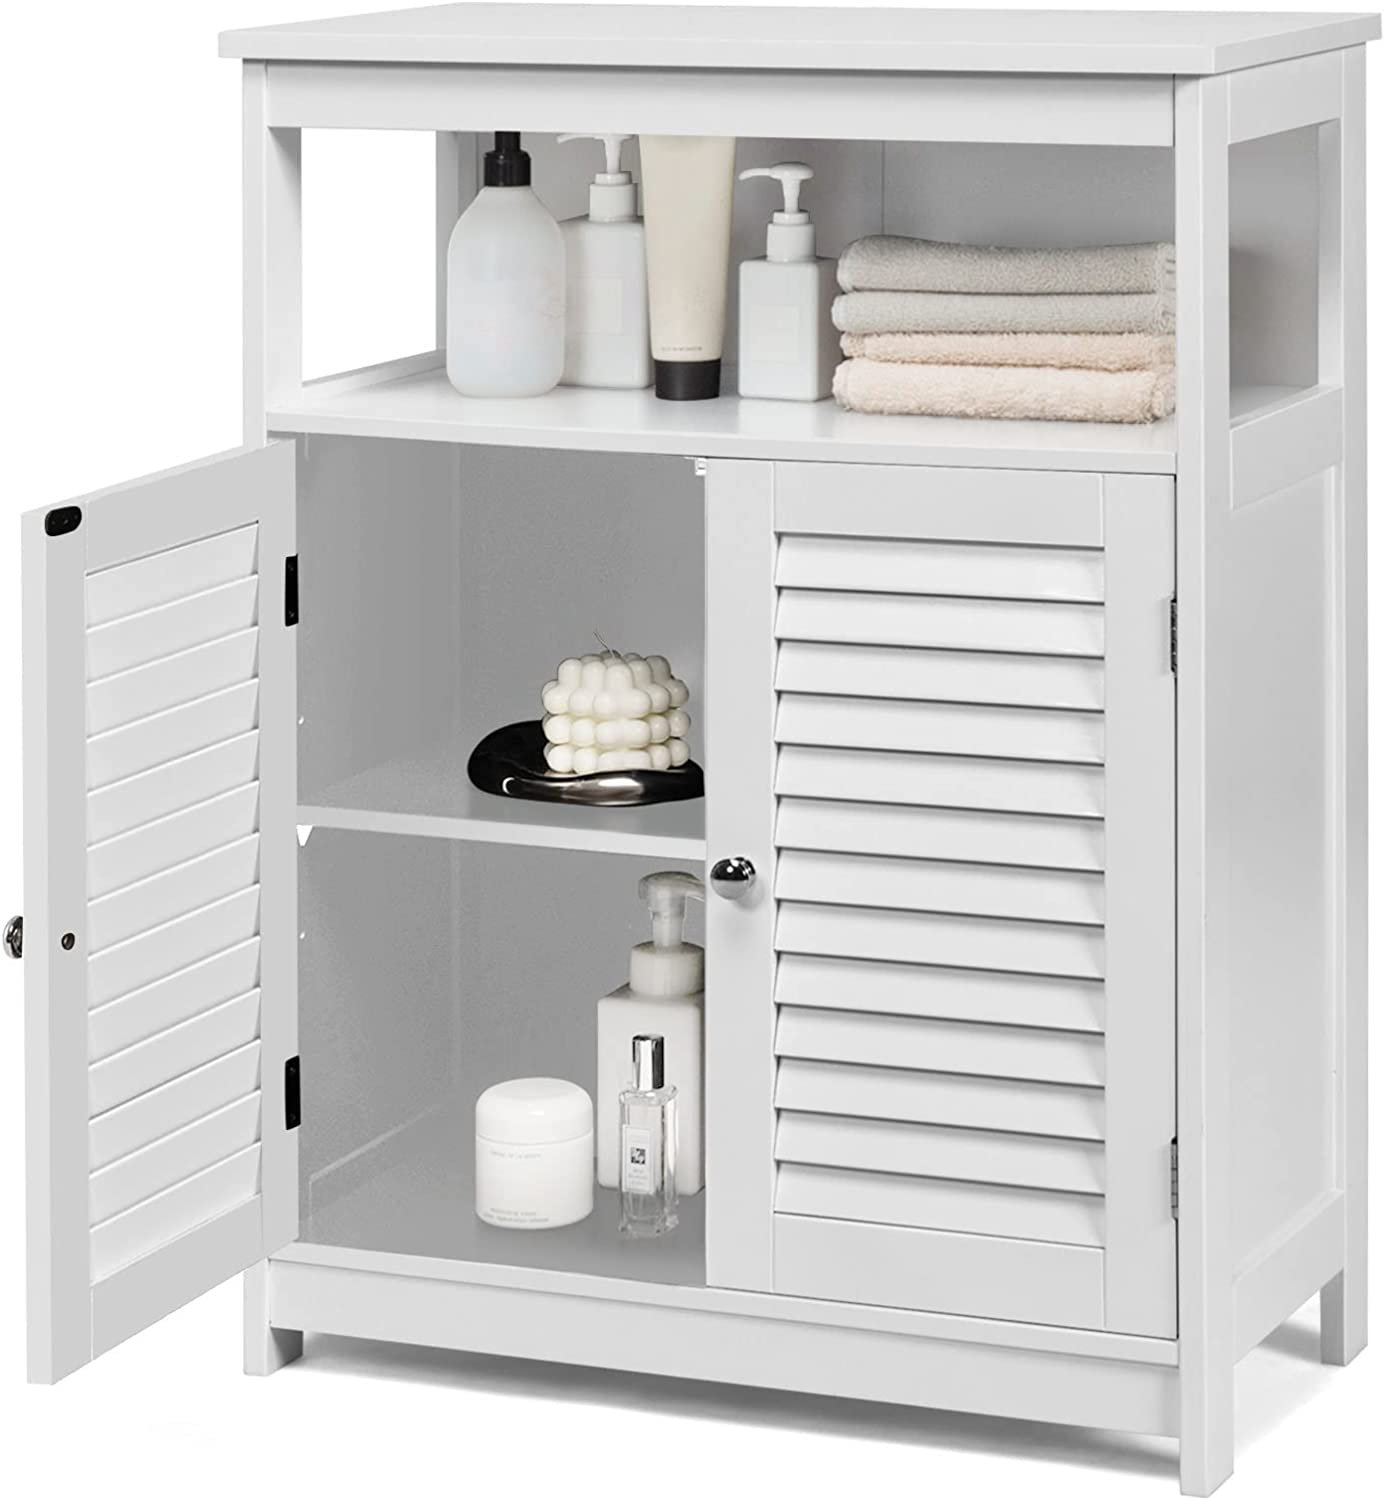 https://assets.wfcdn.com/im/42923703/compr-r85/2481/248110980/albro-solid-wood-freestanding-bathroom-cabinet.jpg